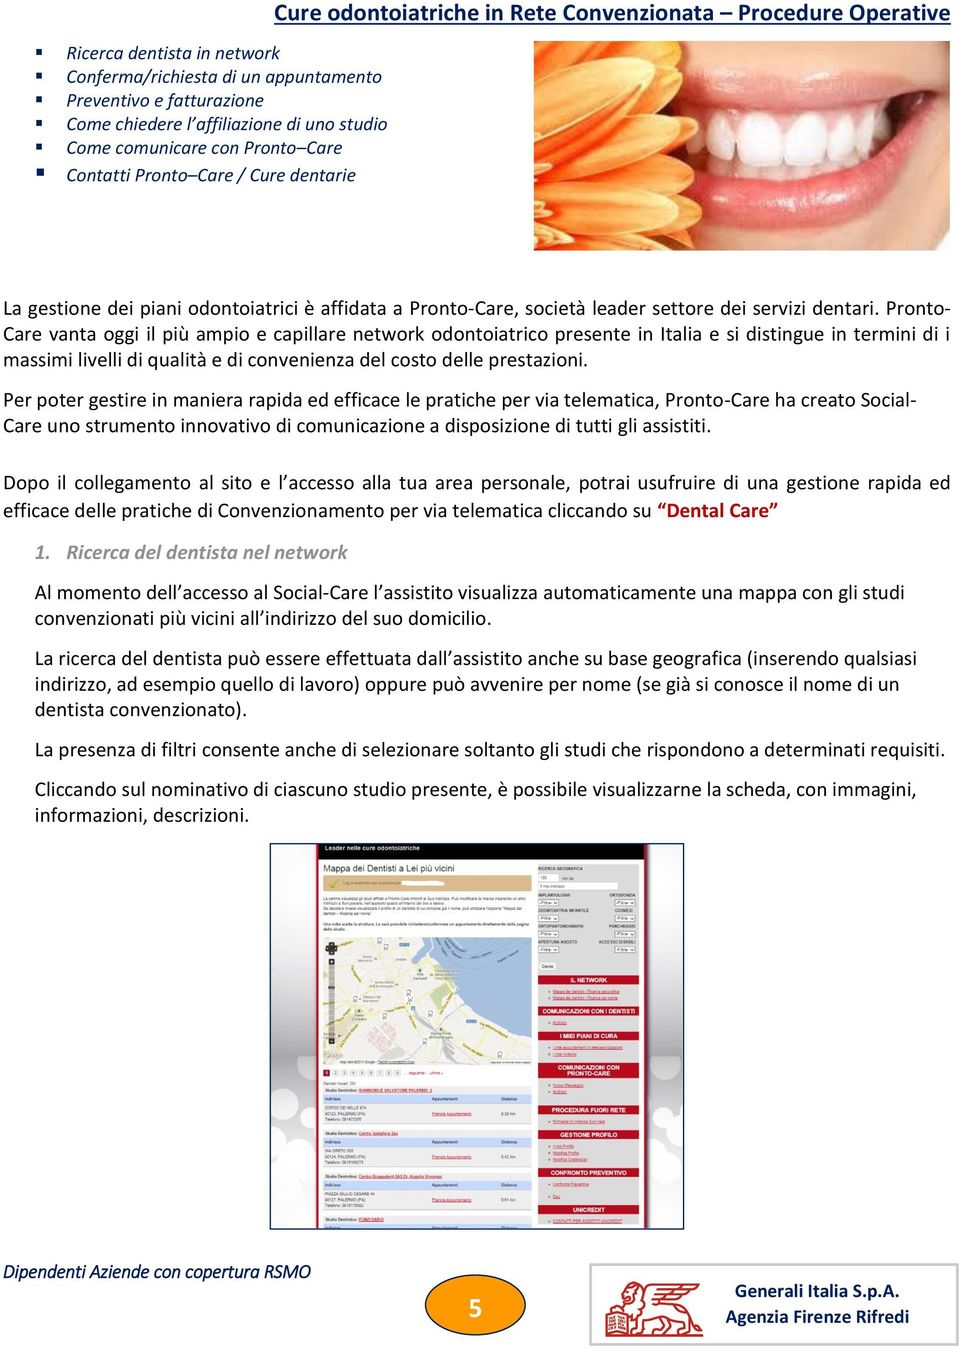 Pronto- Care vanta oggi il più ampio e capillare network odontoiatrico presente in Italia e si distingue in termini di i massimi livelli di qualità e di convenienza del costo delle prestazioni.